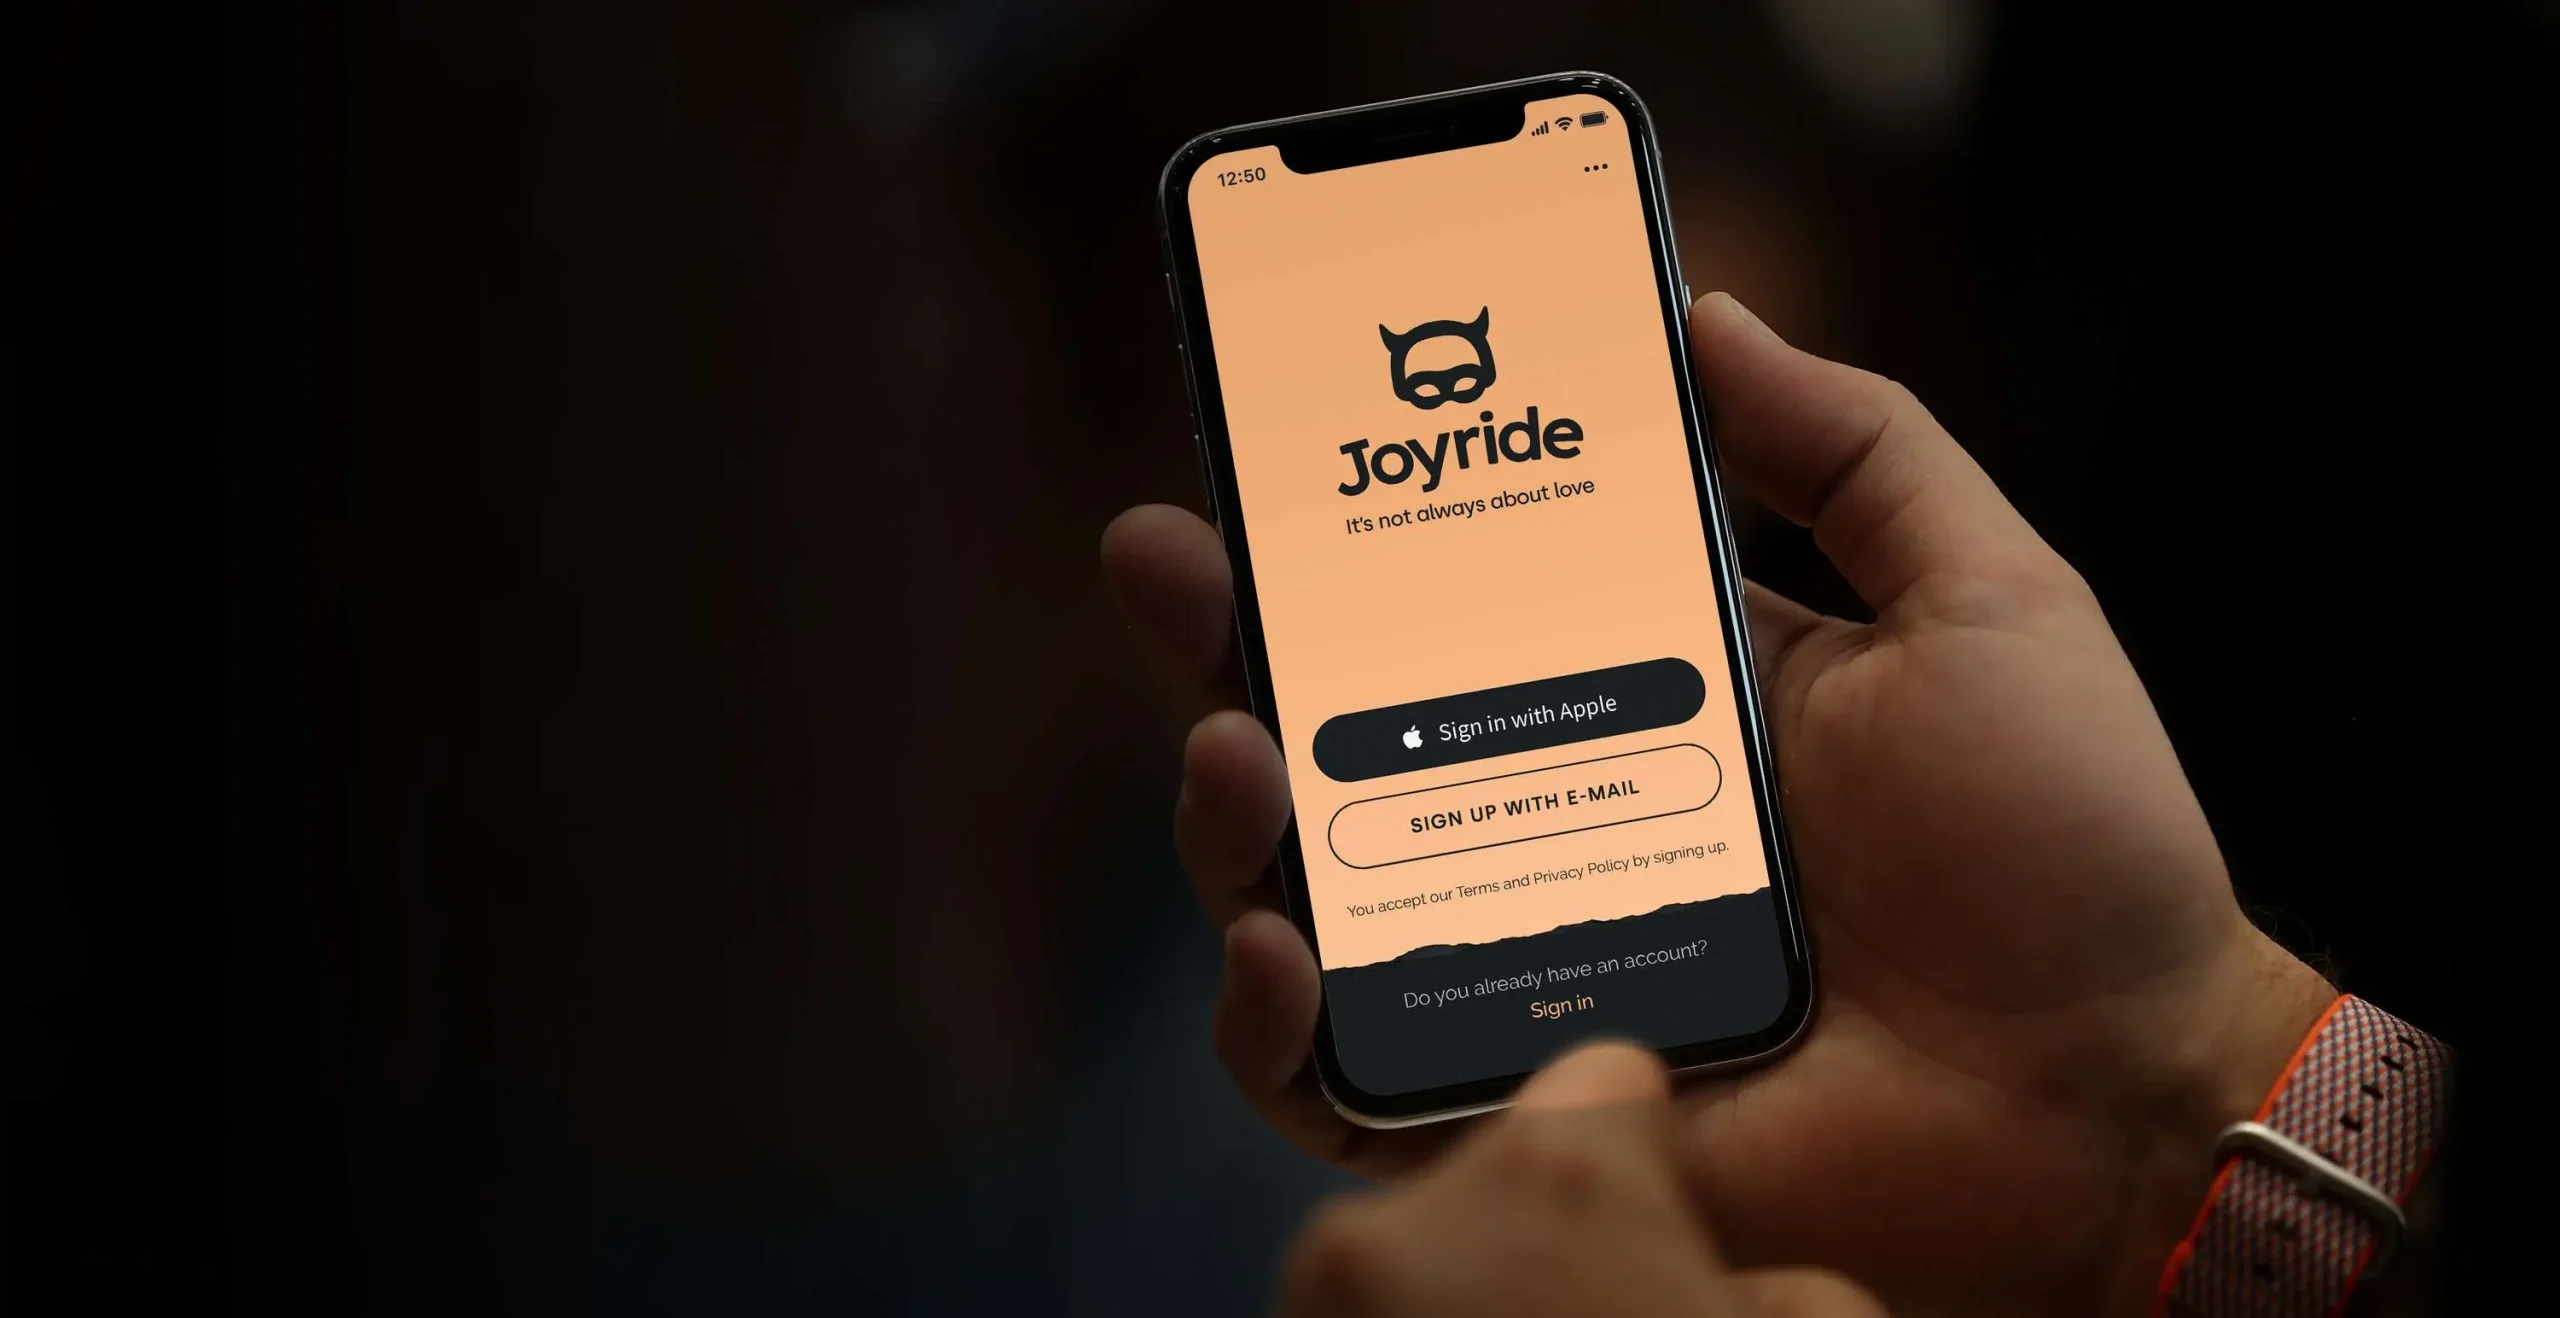 How to delete Joyride account